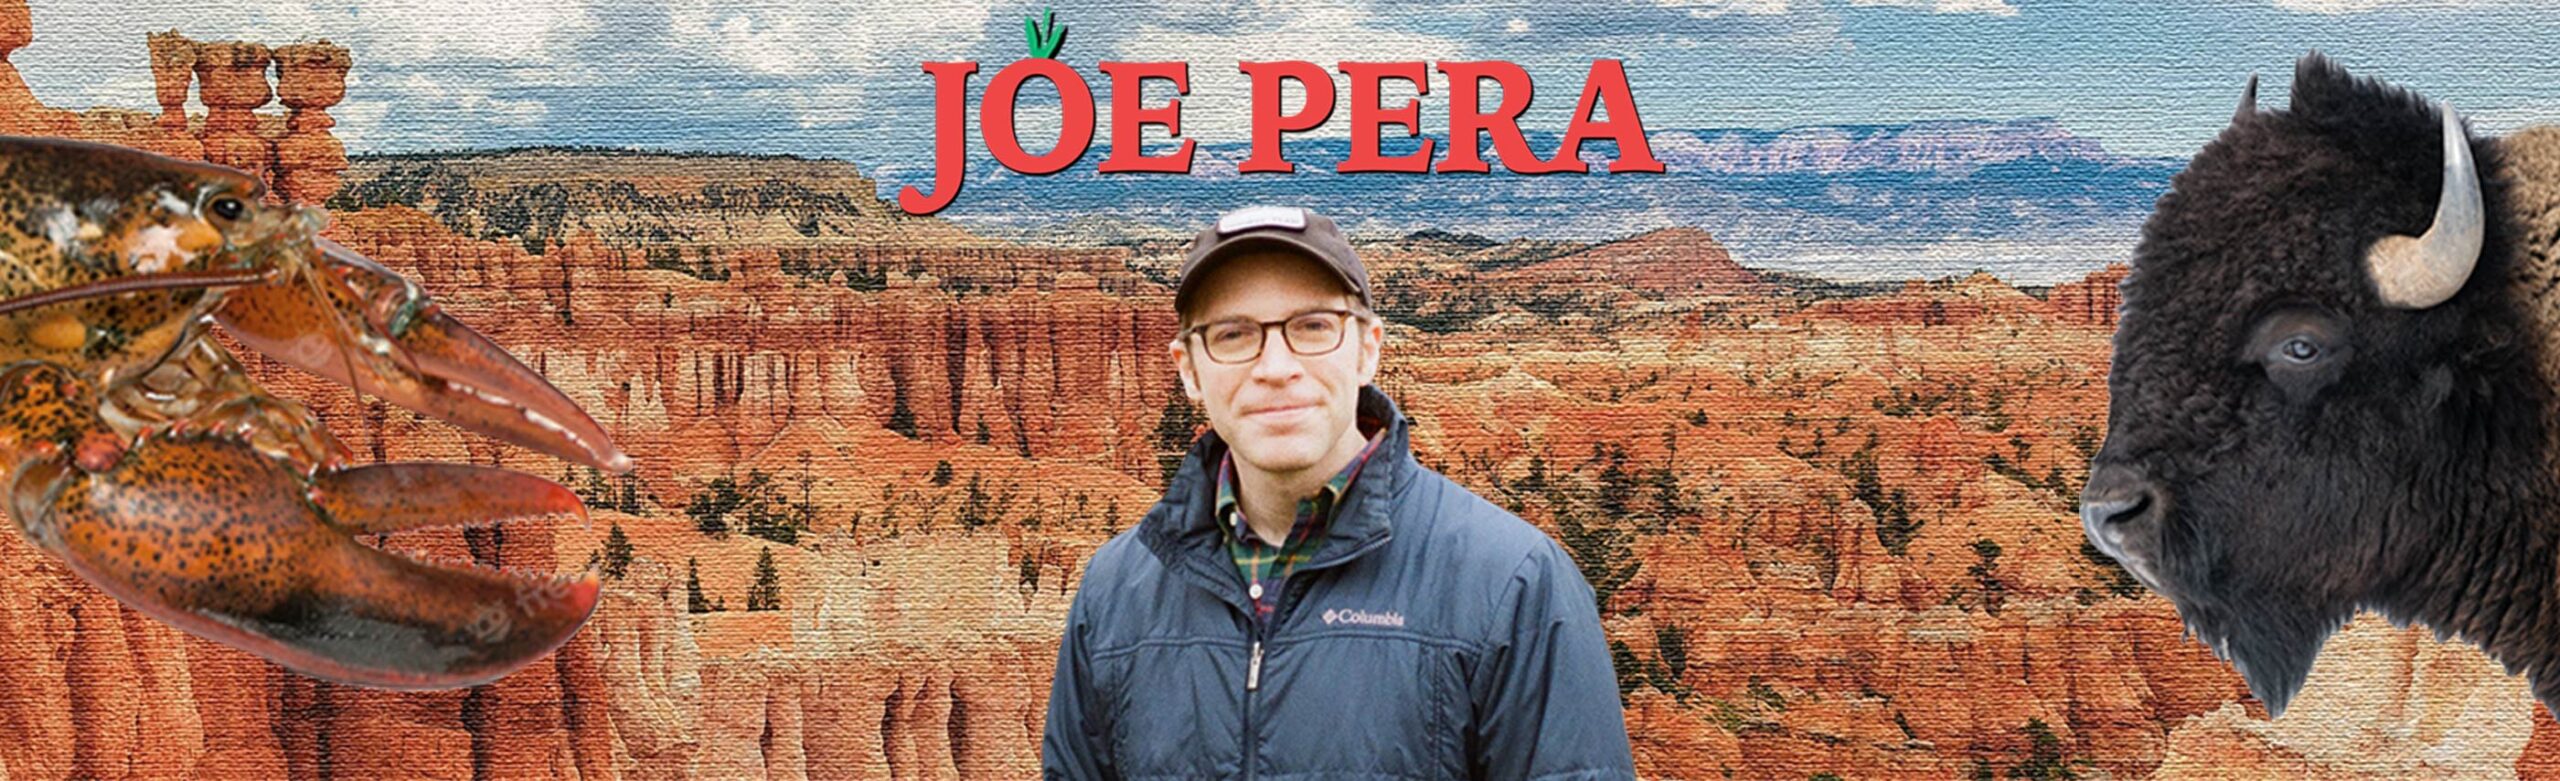 Joe Pera